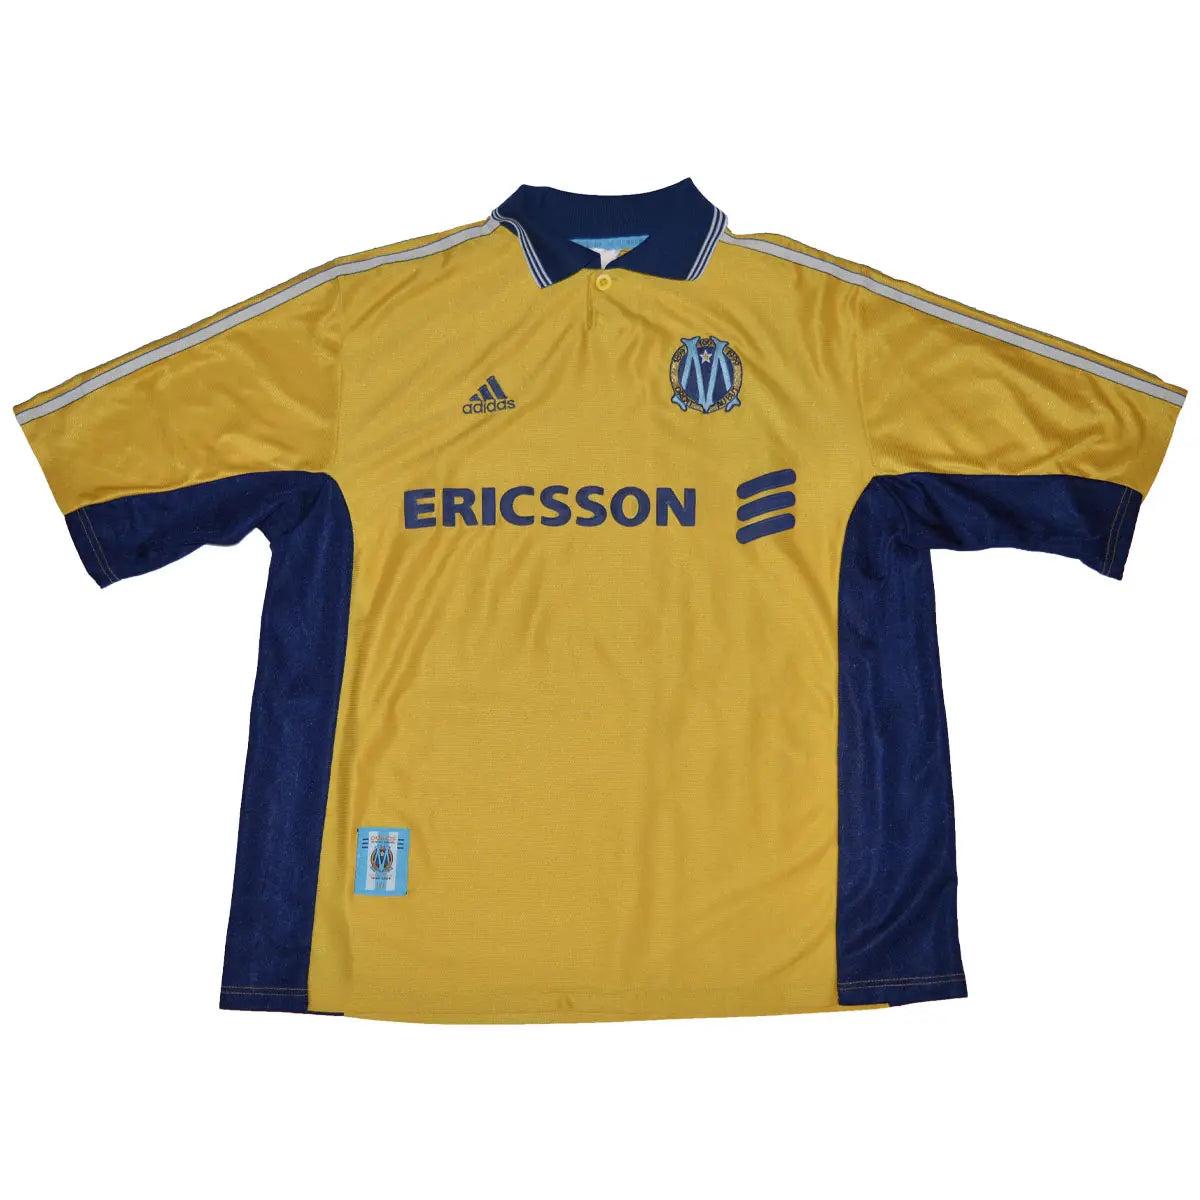 Maillot de foot rétro/vintage authentique jaune et bleu adidas Olympique de Marseille troisième maillot centenaire 1998-1999